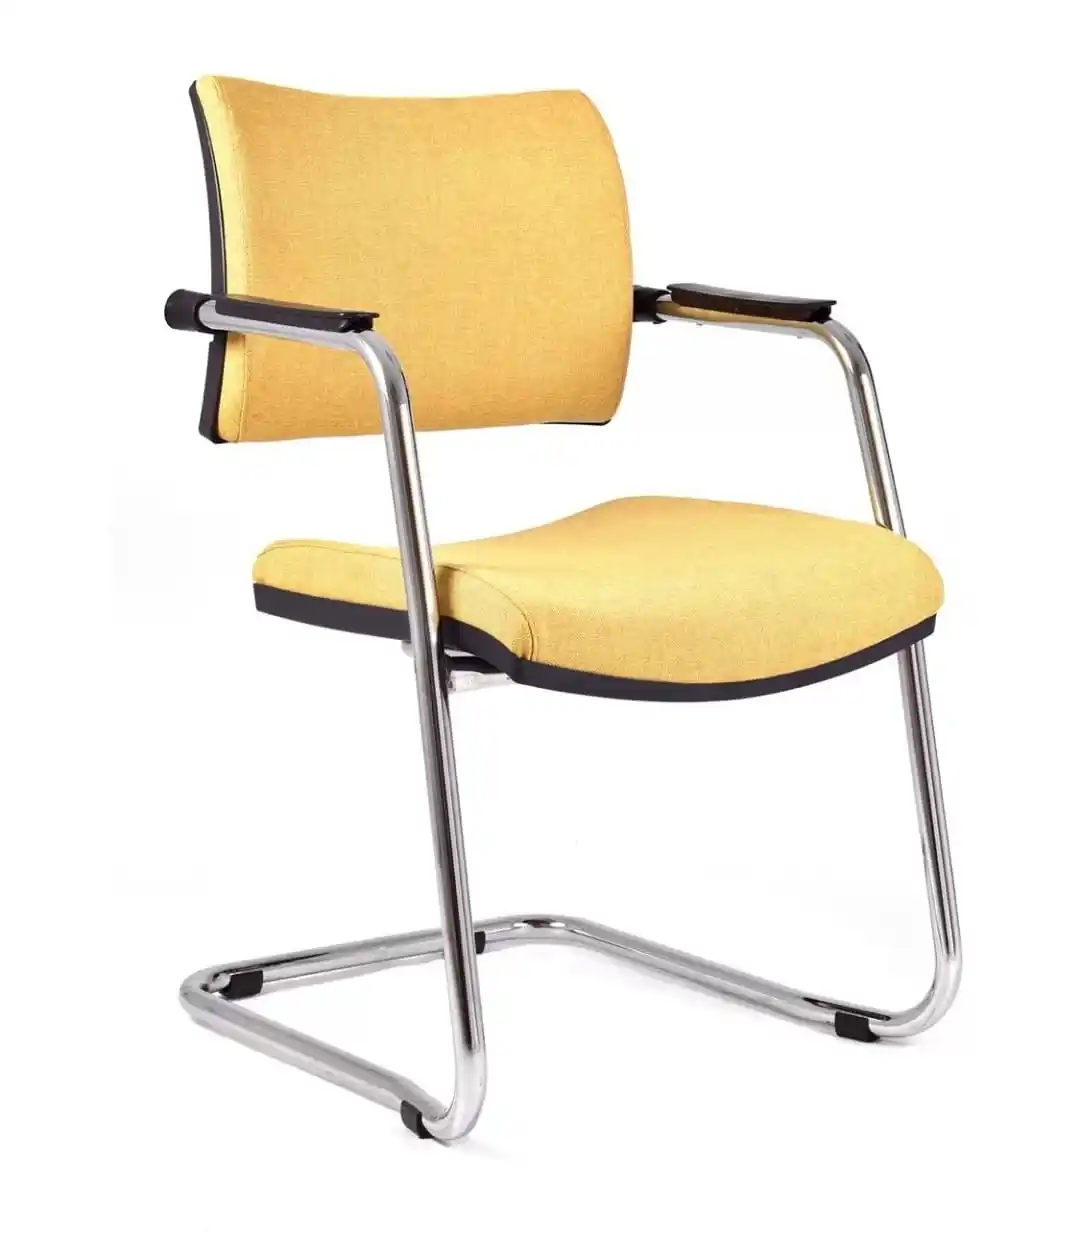 İşyeri kullanımı için ergonomik % yönetici ofis koltuğu rahat ve fonksiyonel tasarım